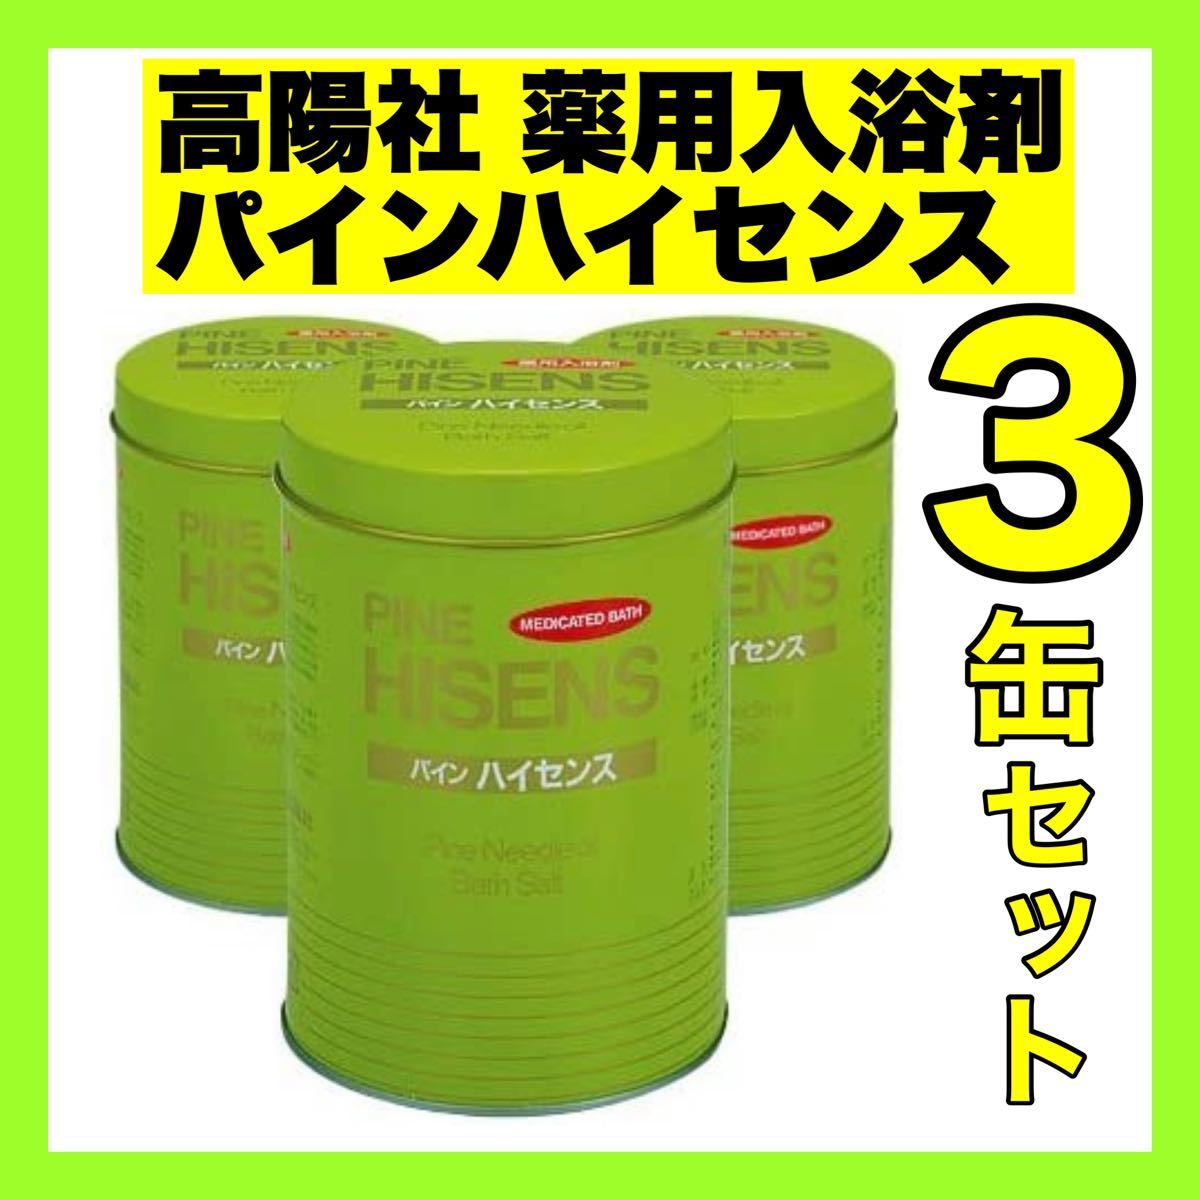 新品HOT 高陽社 パインハイセンス 3缶 Askp4-m45952851613 www.sallda.sk